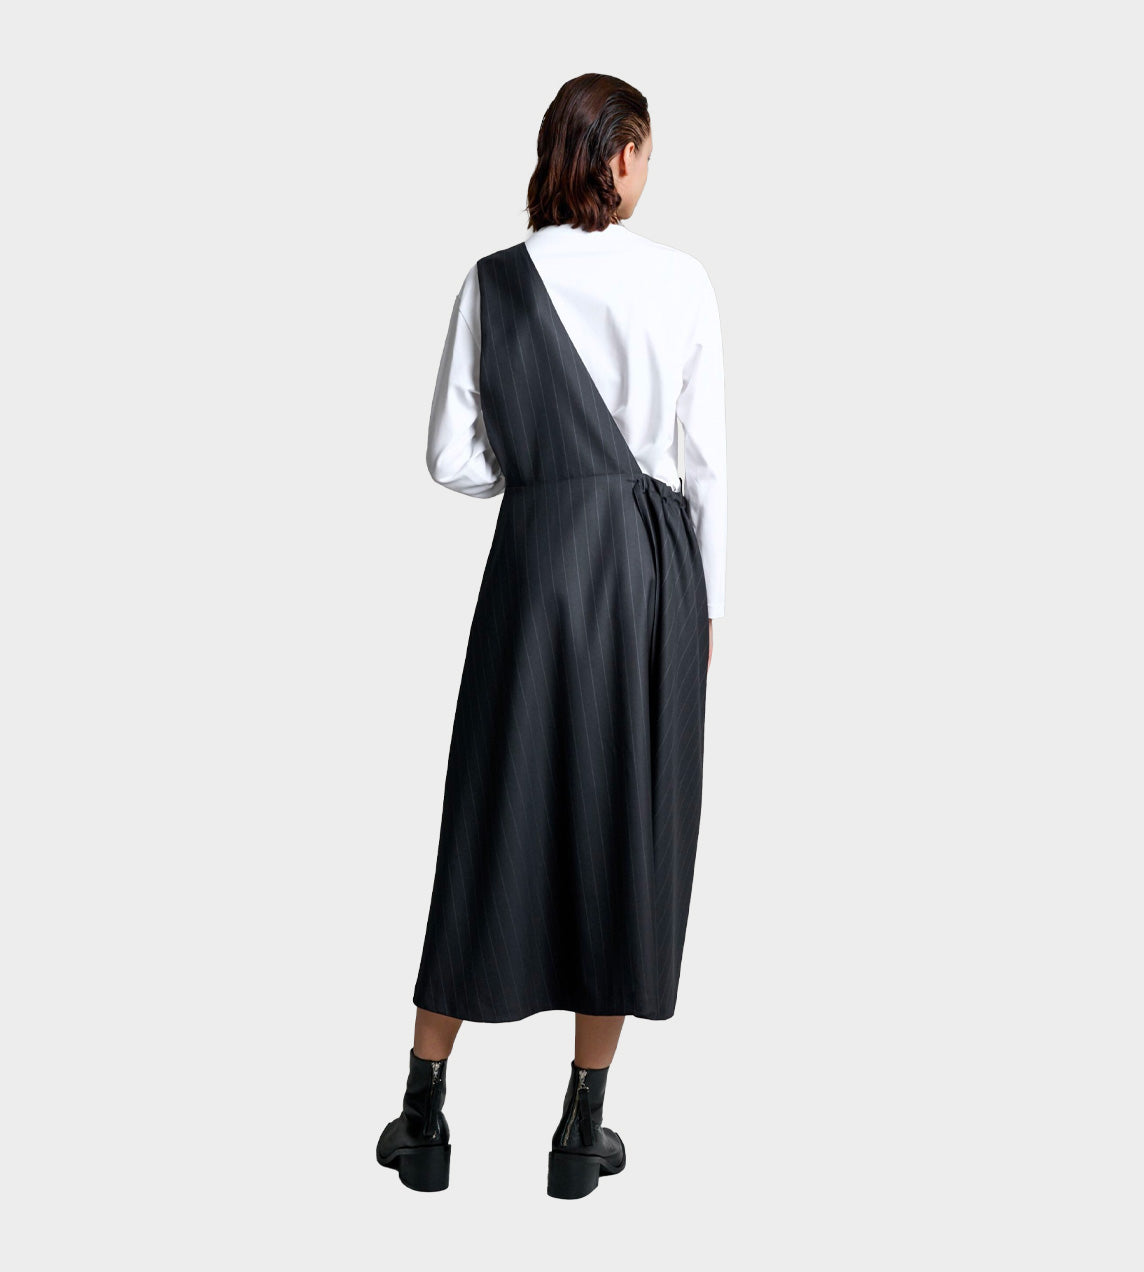 UJOH - One Shoulder Skirt Olive/Grey